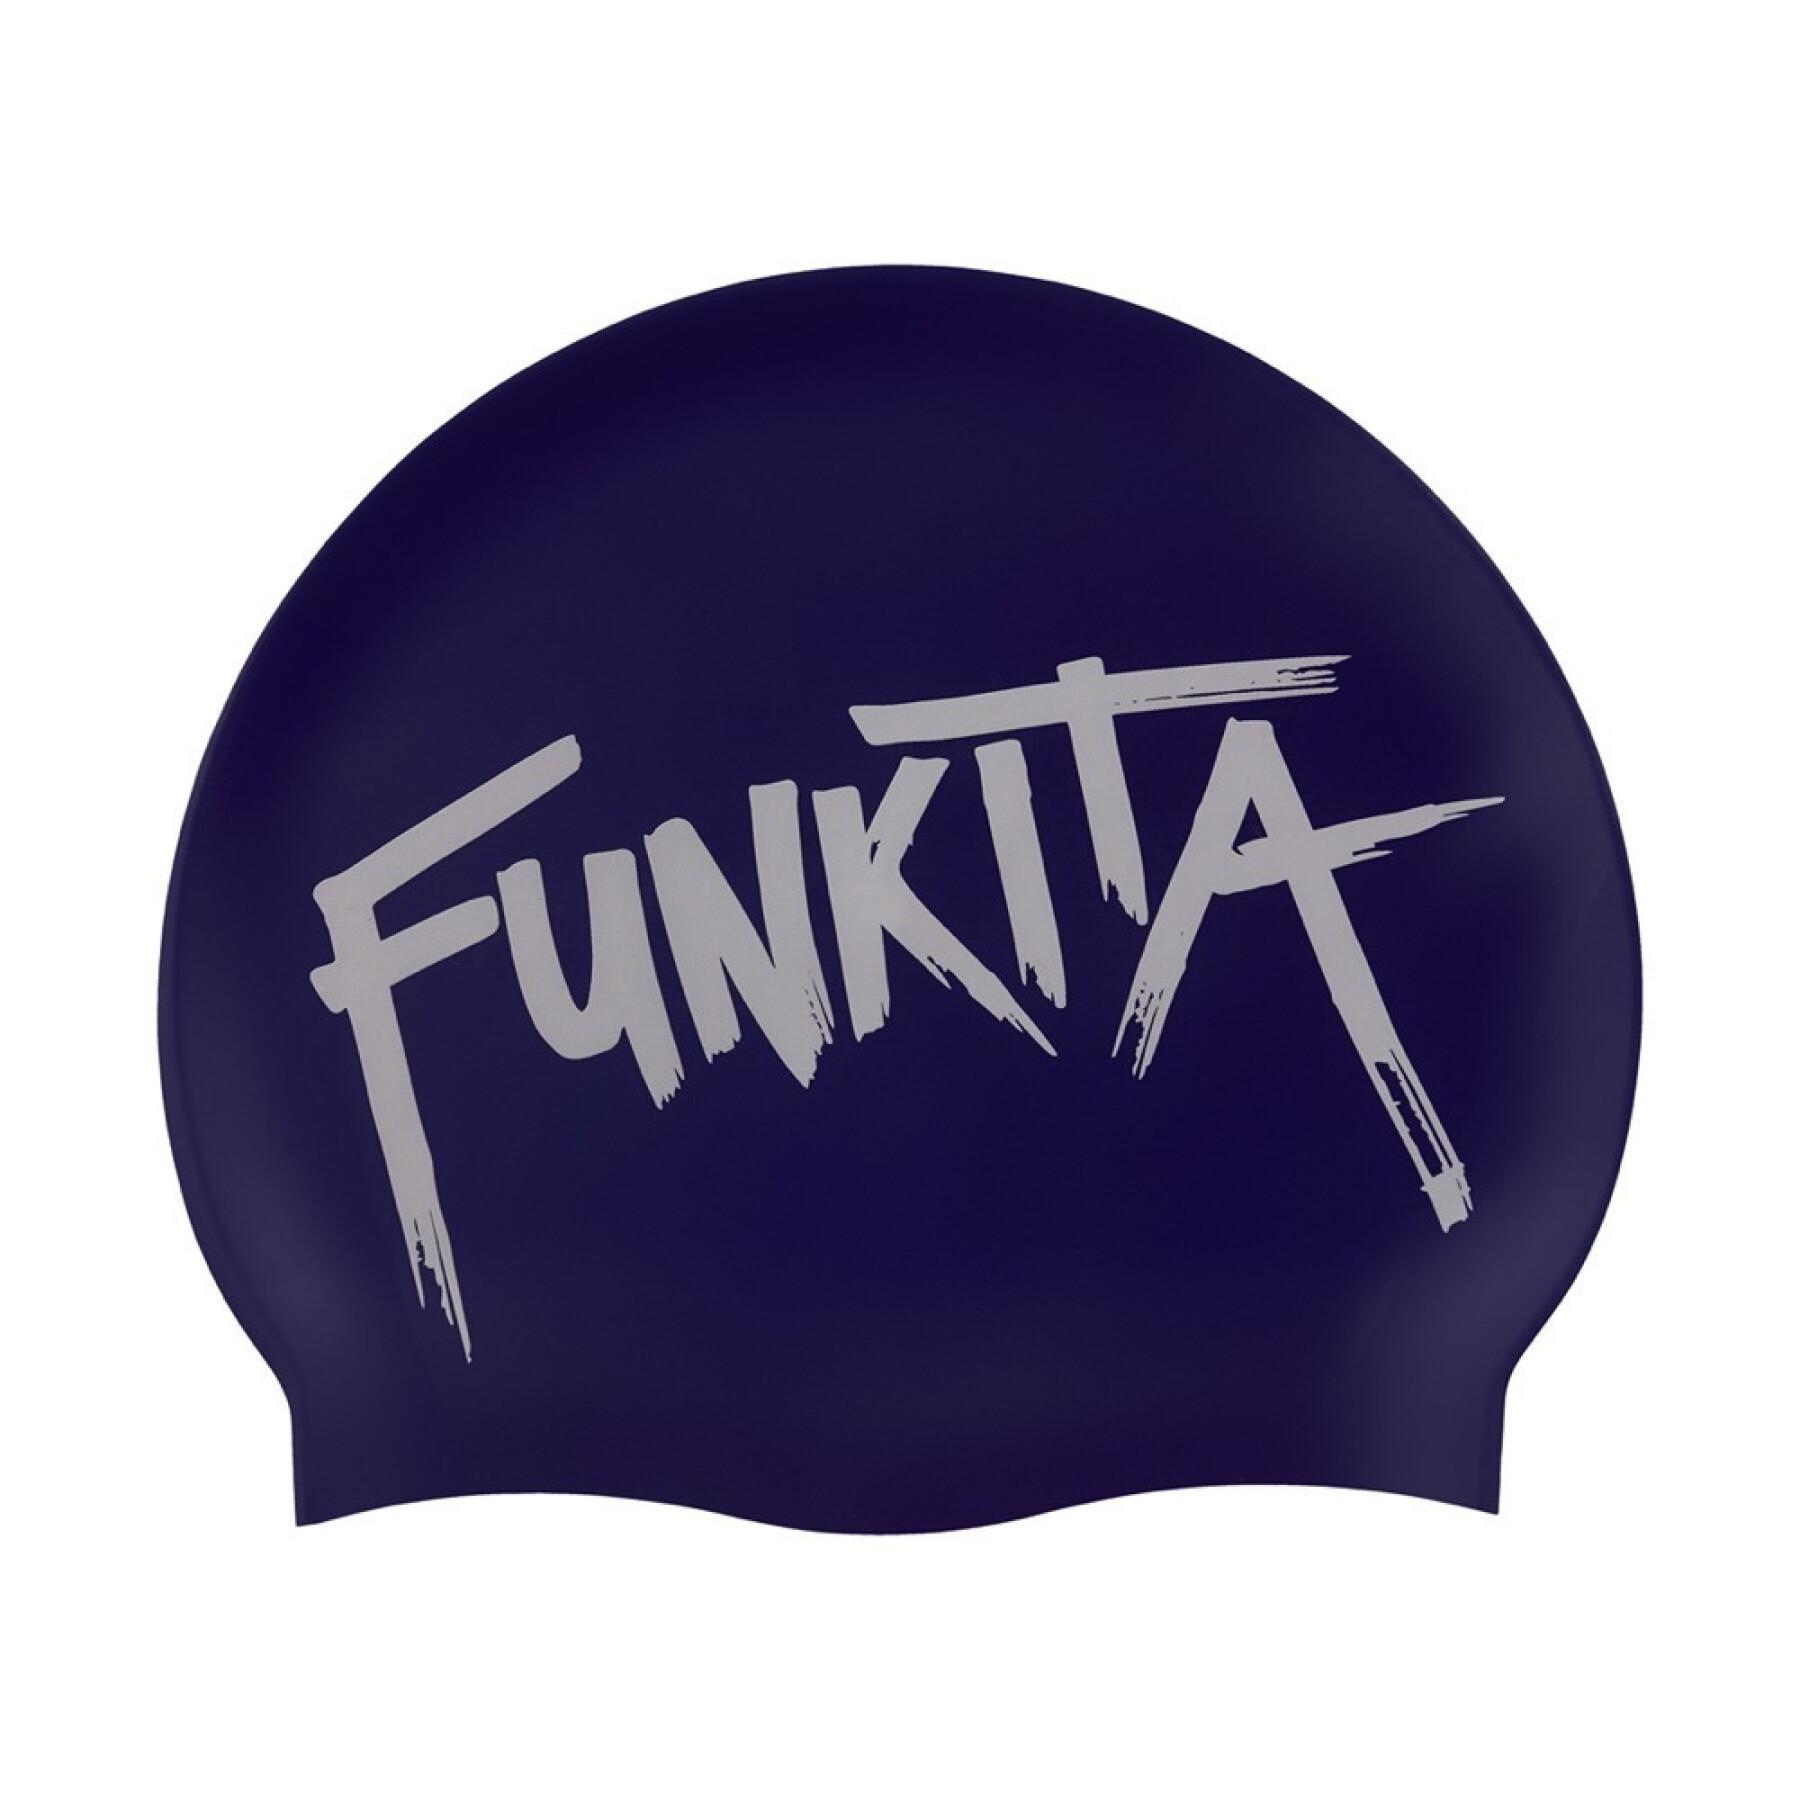 Bathing cap Funkita